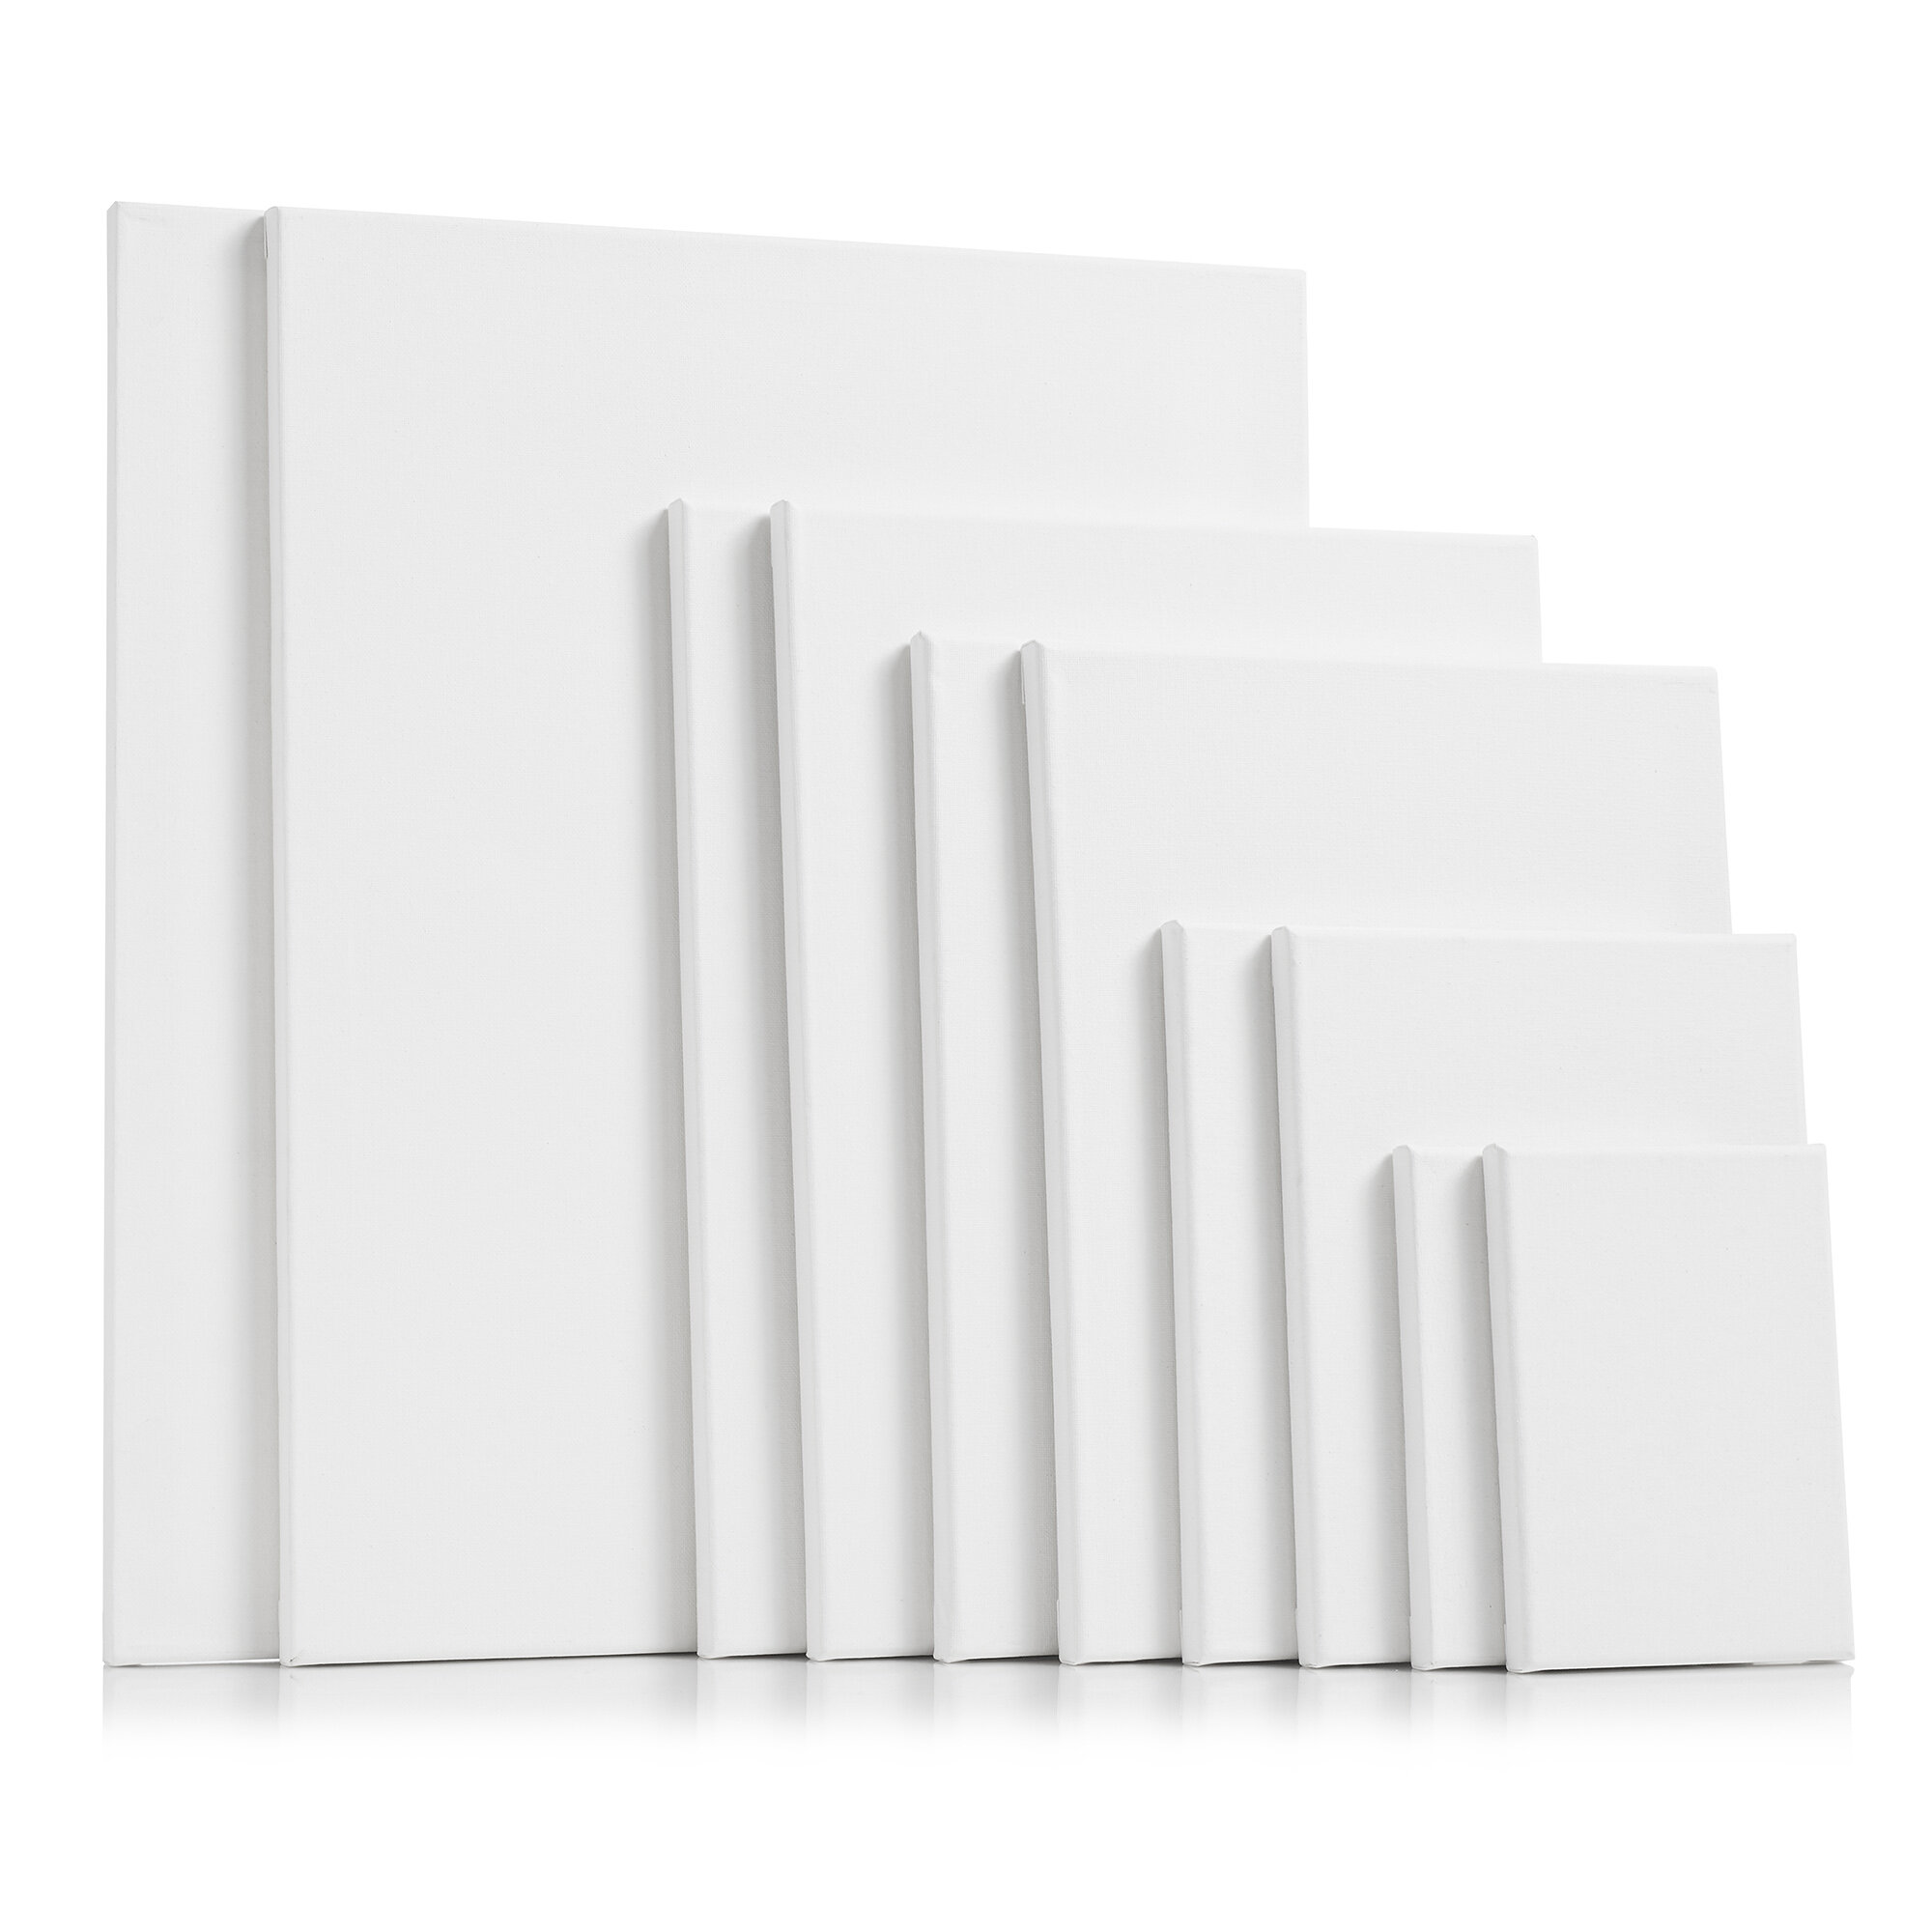 Flipside Products Foam Board, White